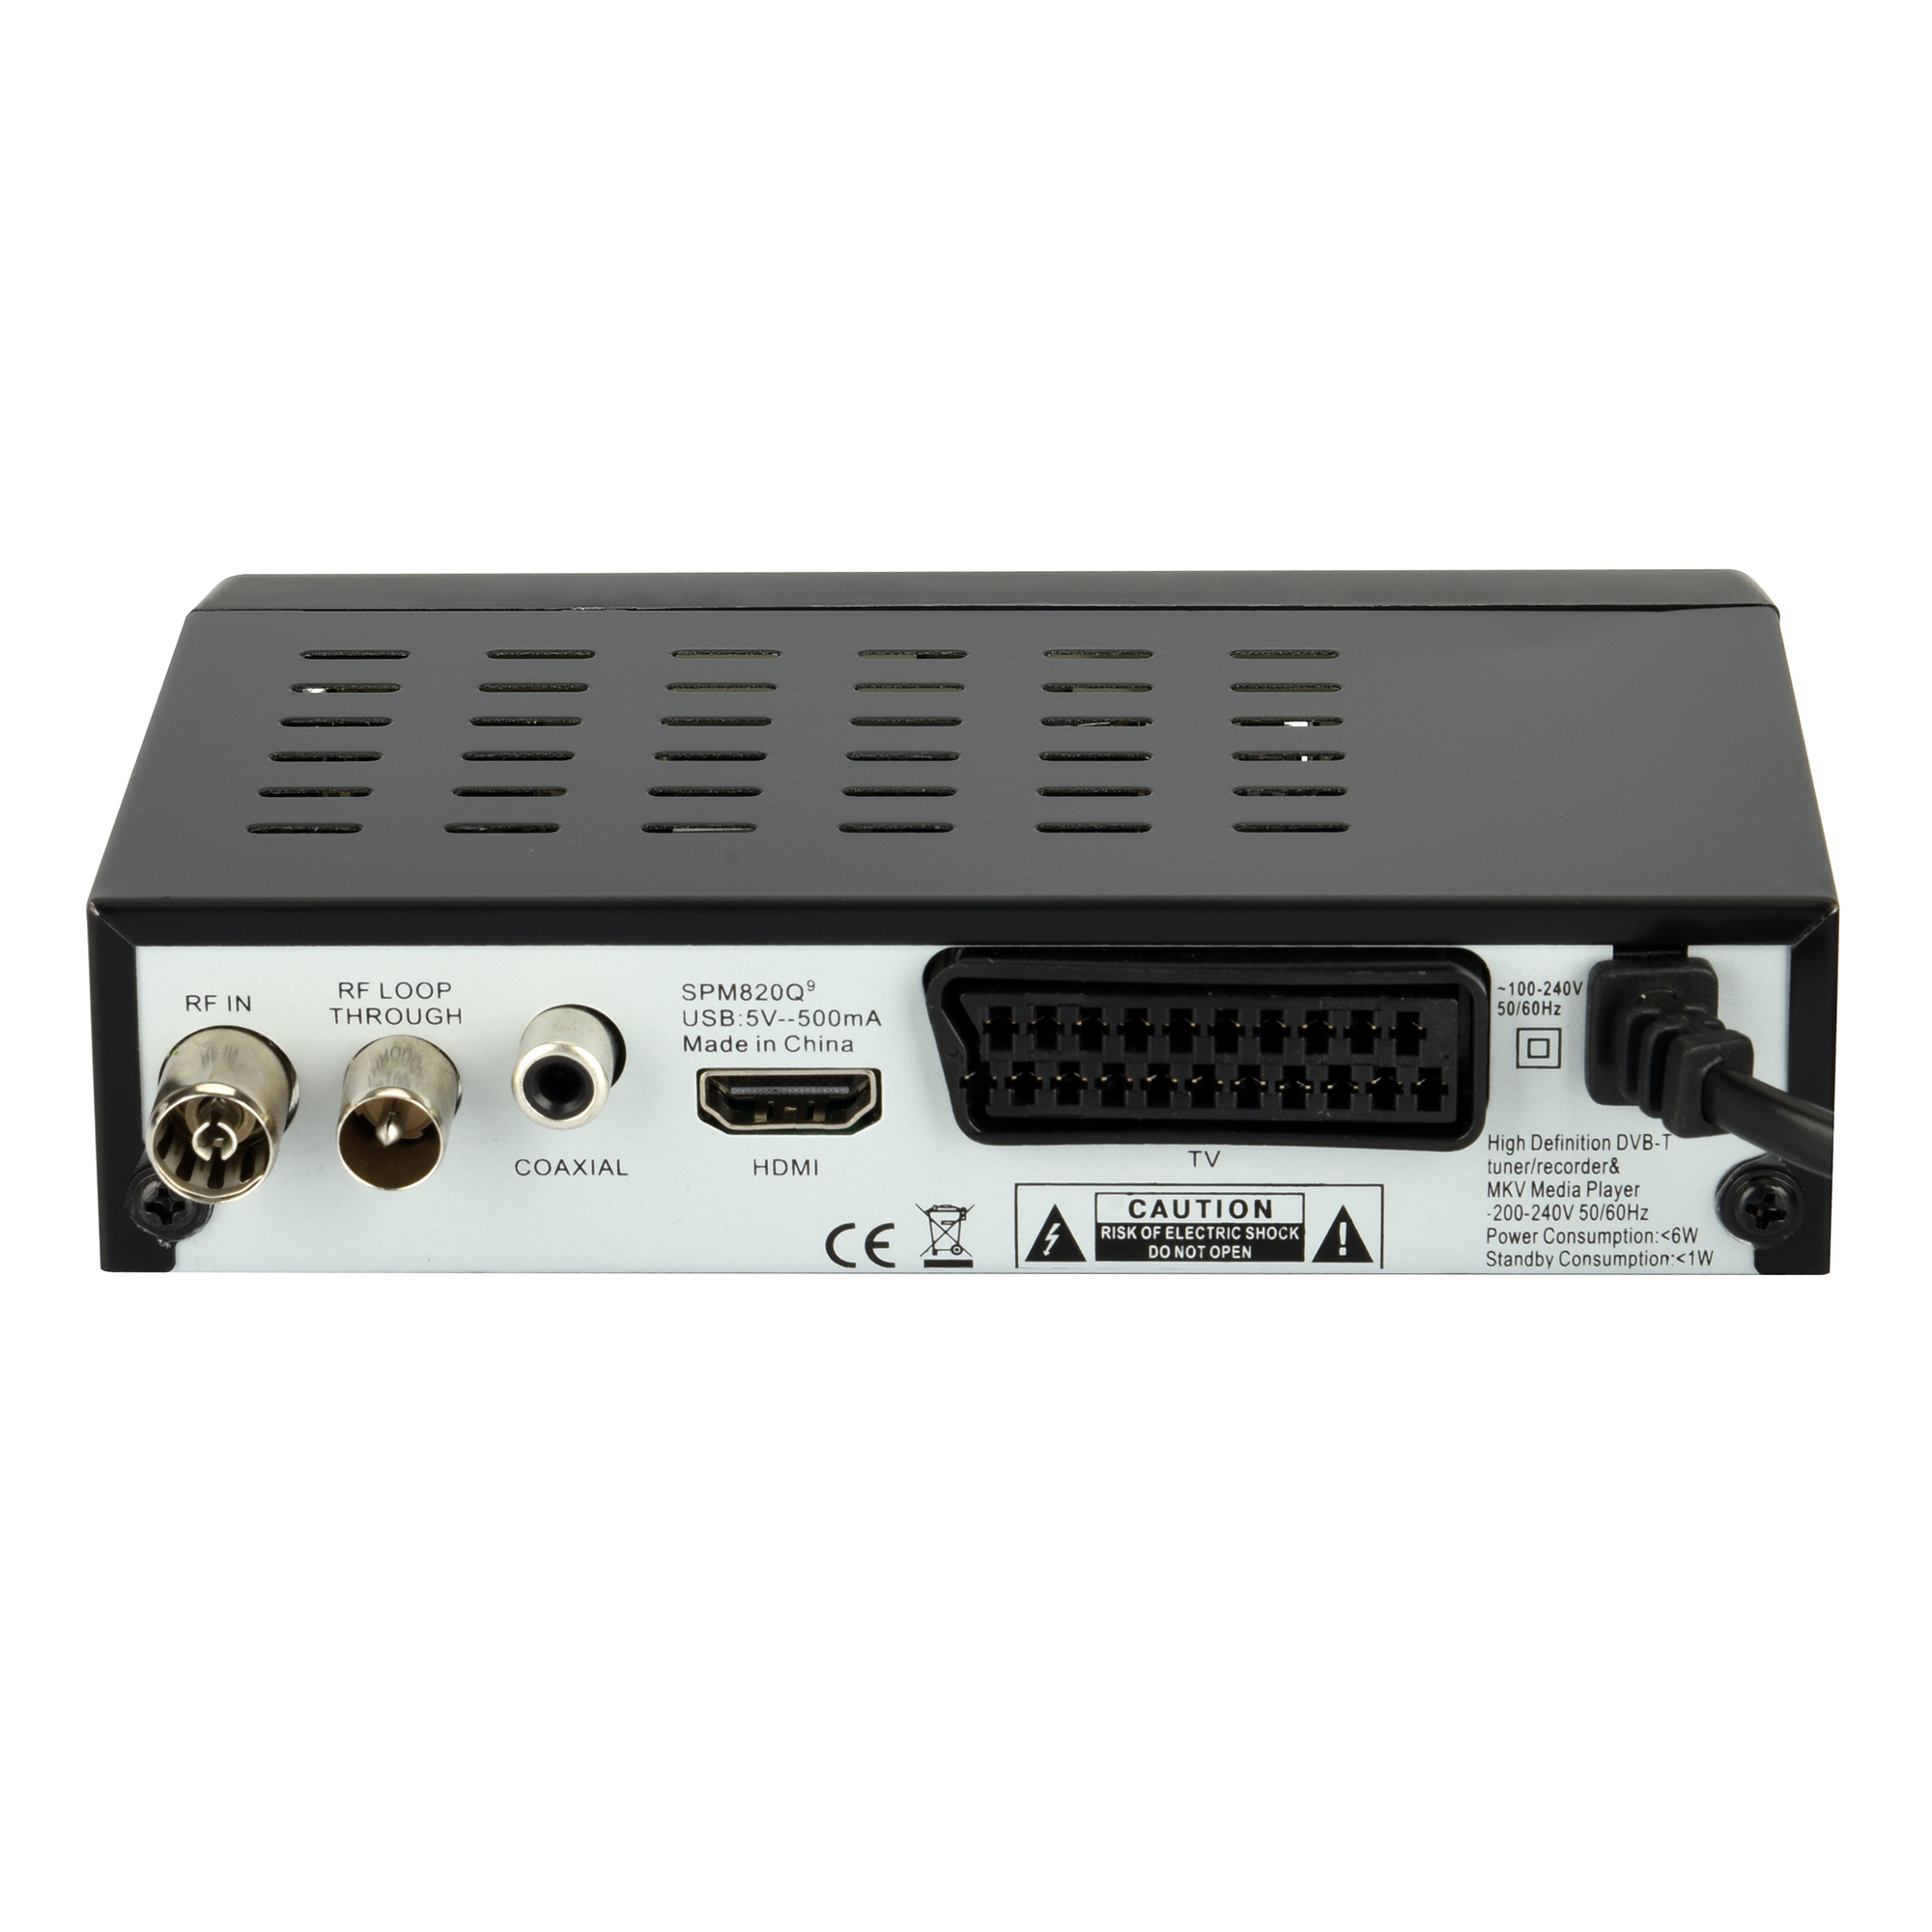 Reproductor multimedia  Sveon SPM810 sintonizador grabador TDT